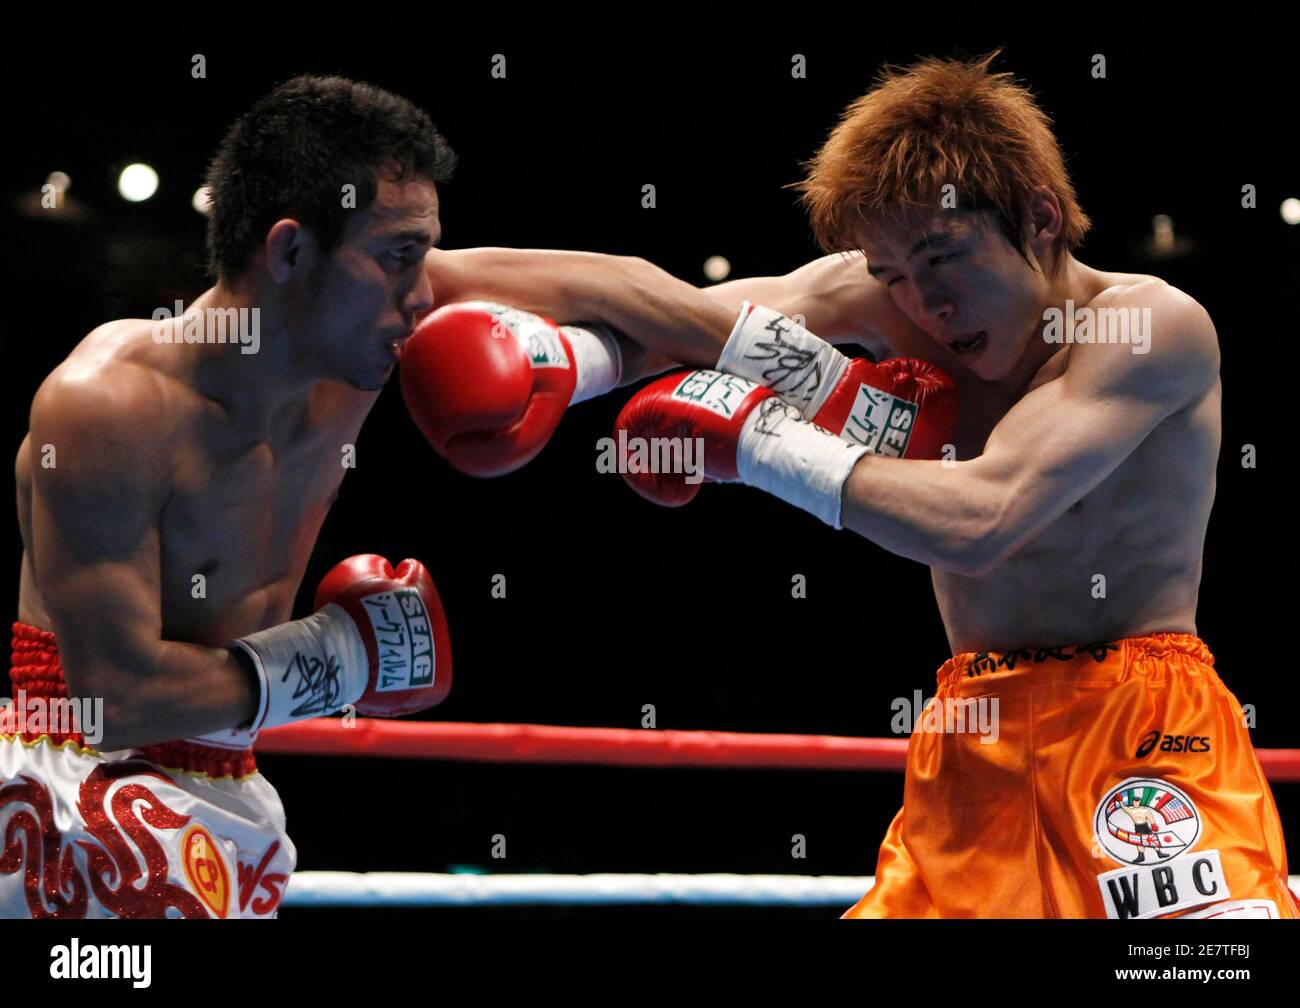 Nuez juez alfiler Oleydong Sithsamerchai (L) de Tailandia golpea a Yasutaka Kuroki de Japón  durante su combate de boxeo de peso mínimo del WBC en Tokio el 27 de marzo  de 2010. REUTERS/Toru Hanai (JAPÓN -